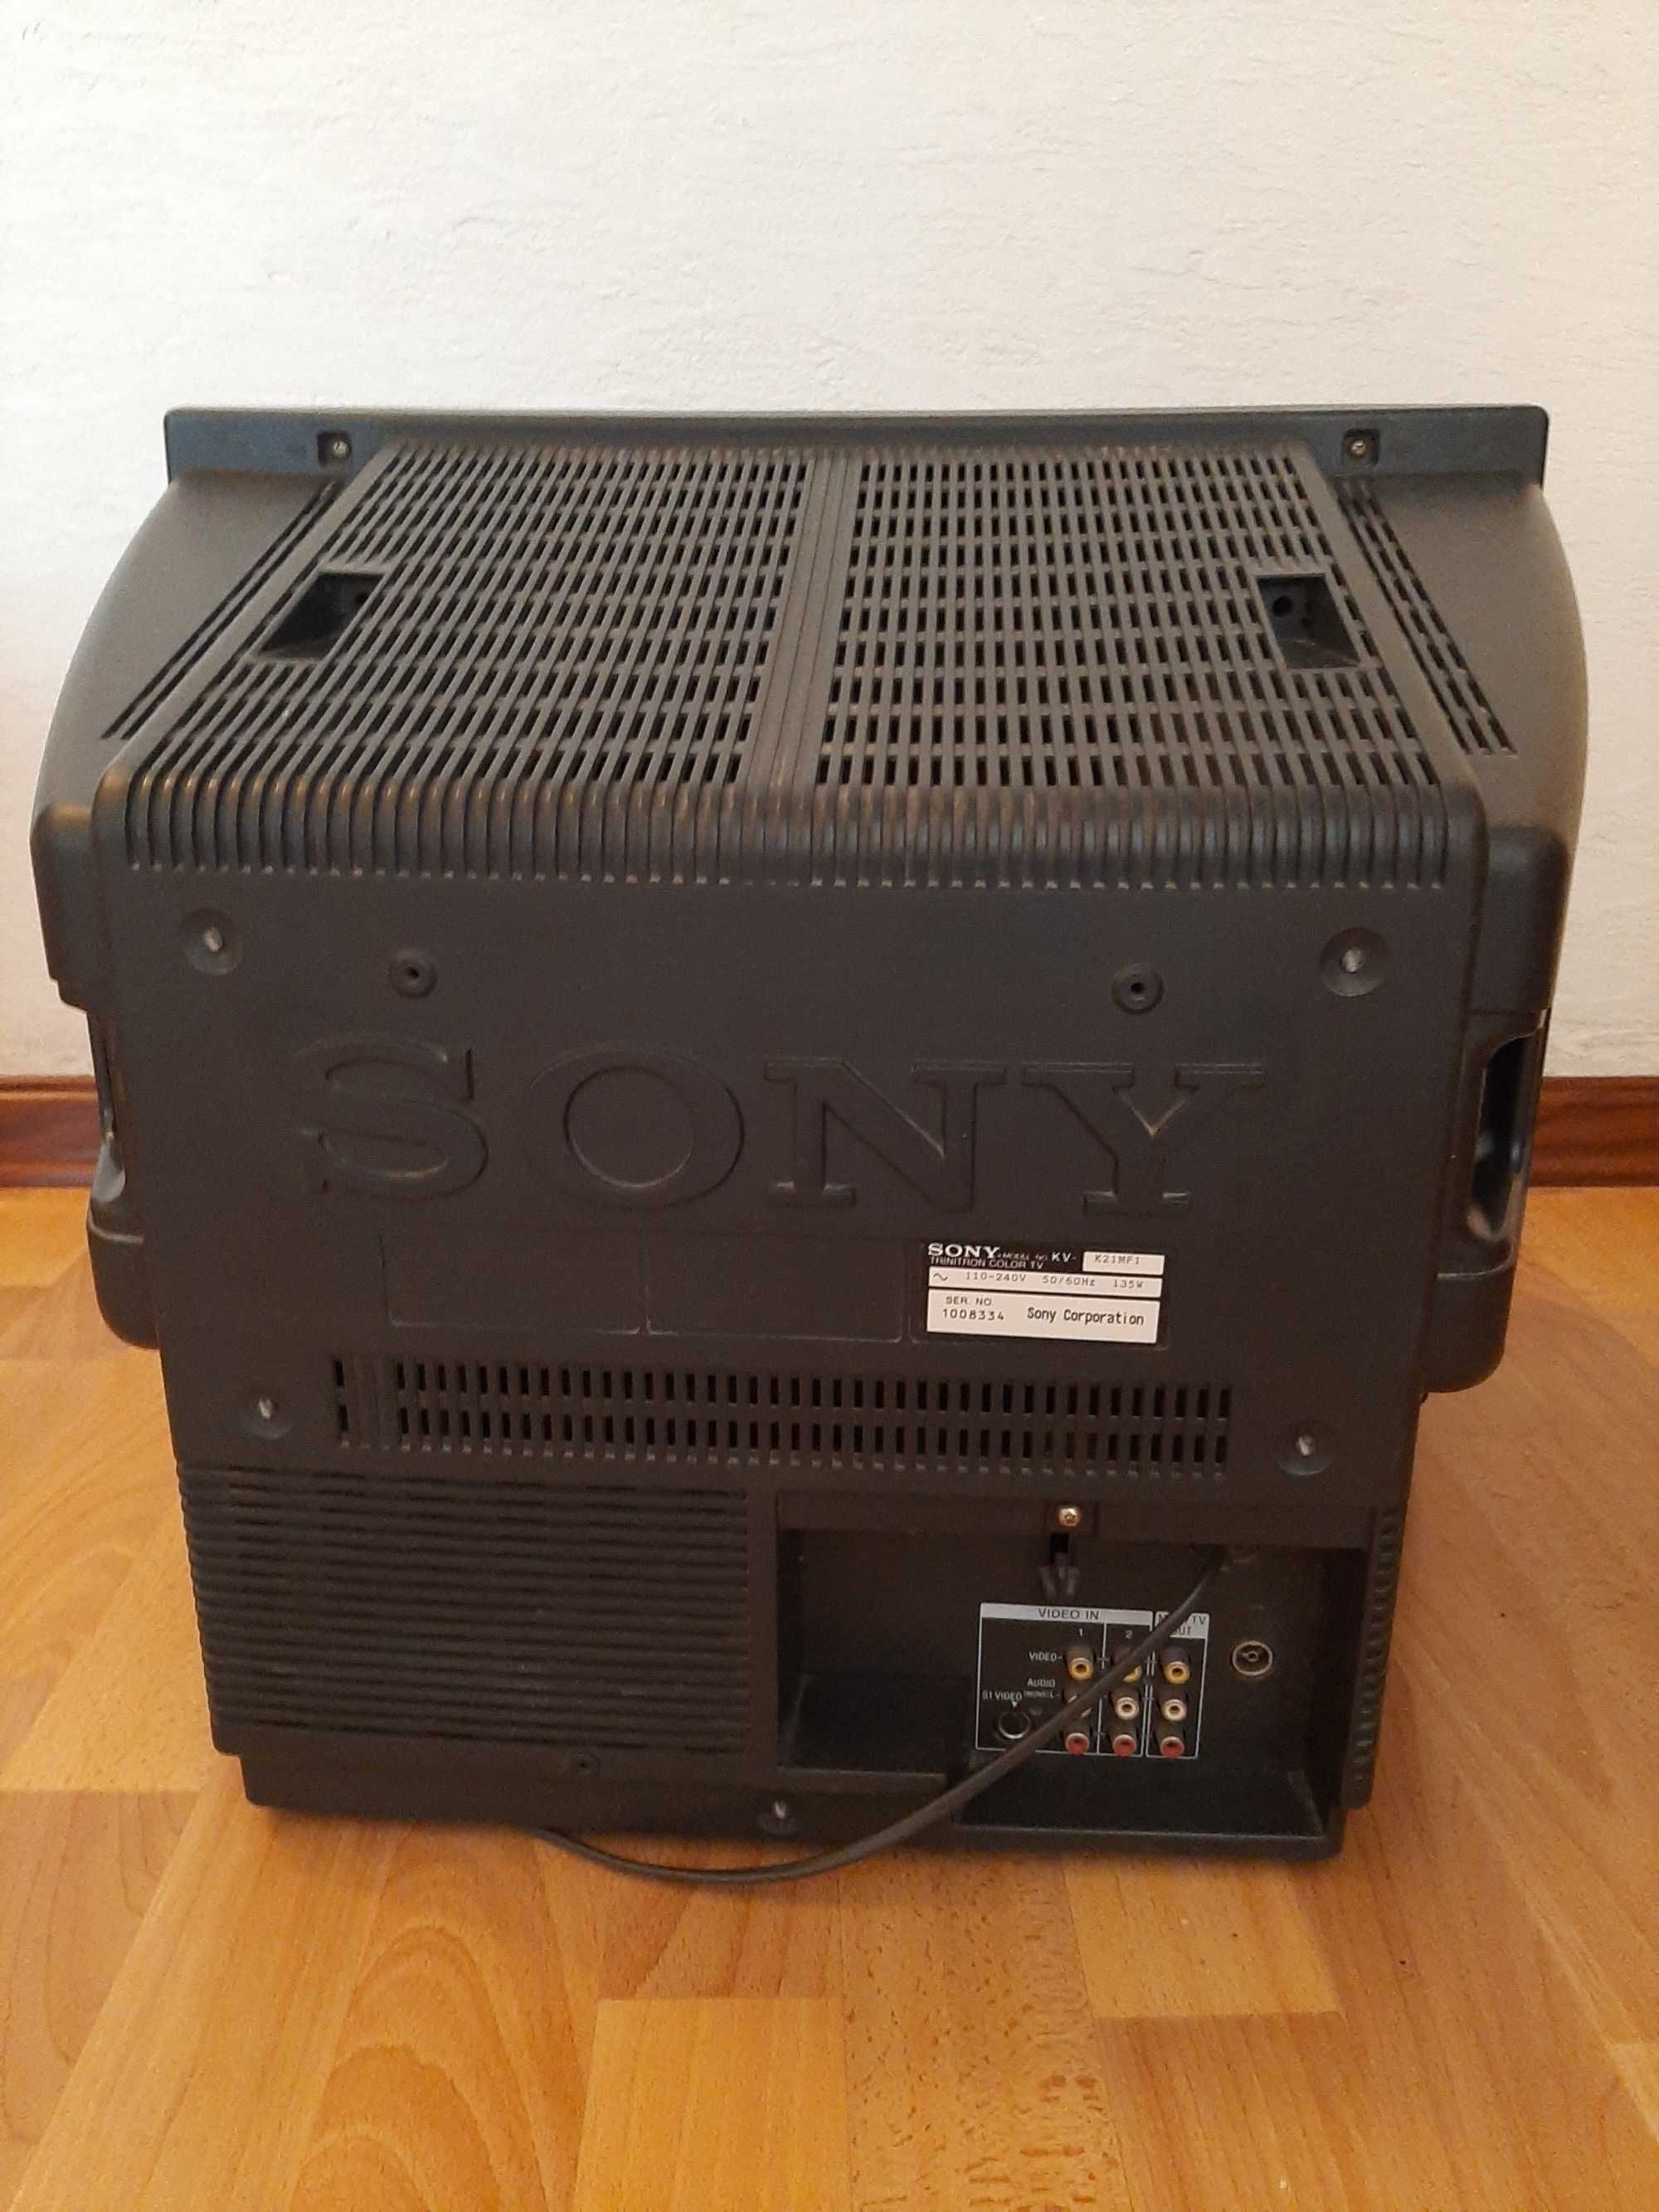 Телевизор Sony kirara bas Made in Japan 51 и 63 cm в хорошем состоянии